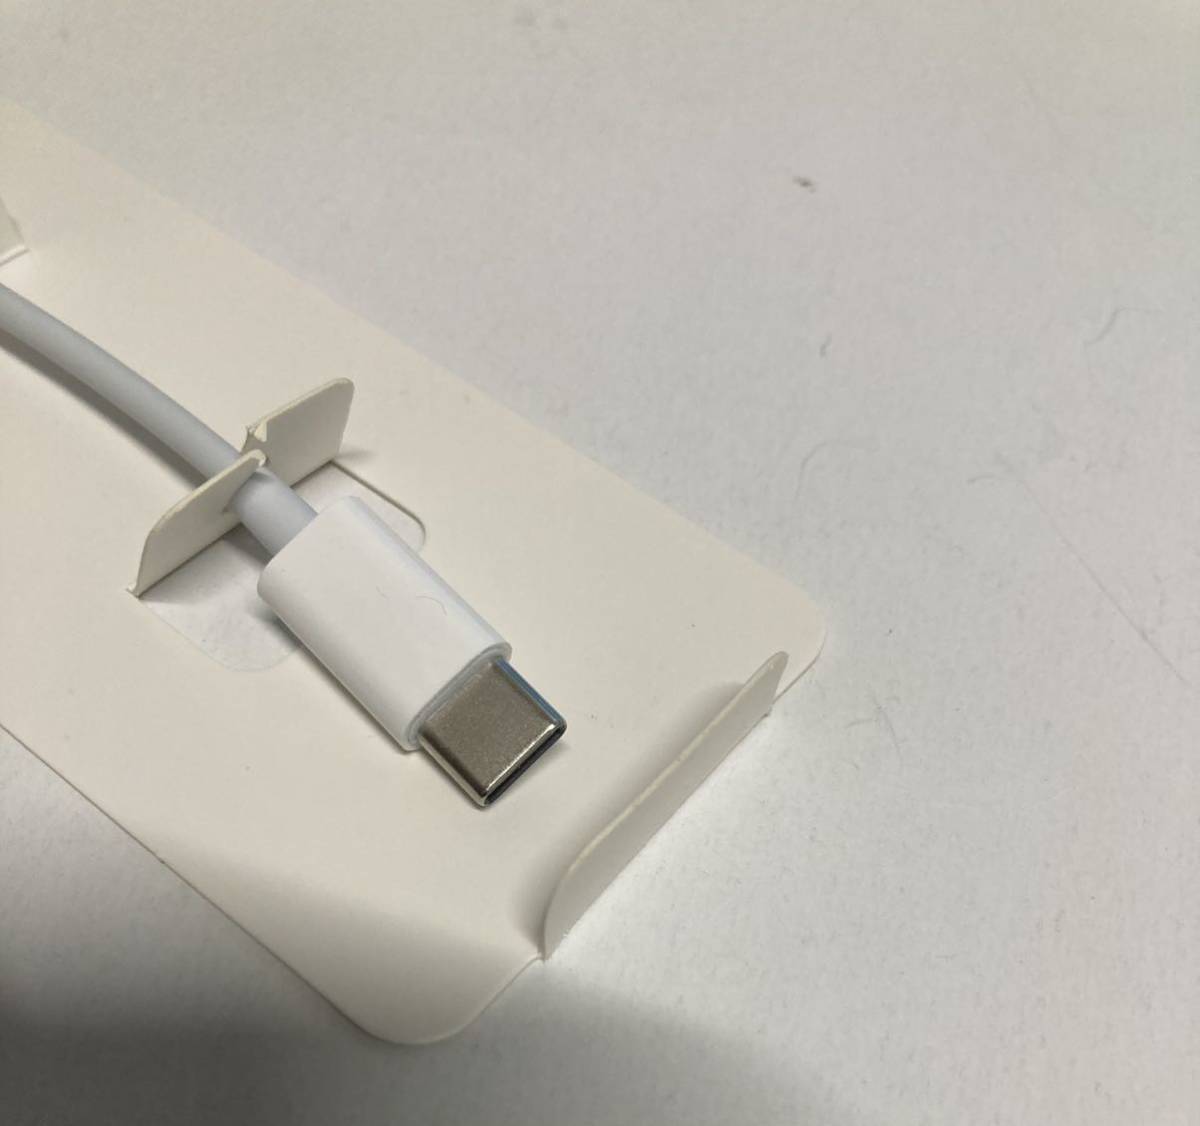 【新版】 Lightning to USB C 変換アダプタ Hi-Fi イヤホン端子 オーディオ 急速充電 高速転送 通話可変換コネクタライトニング to Type C_画像8